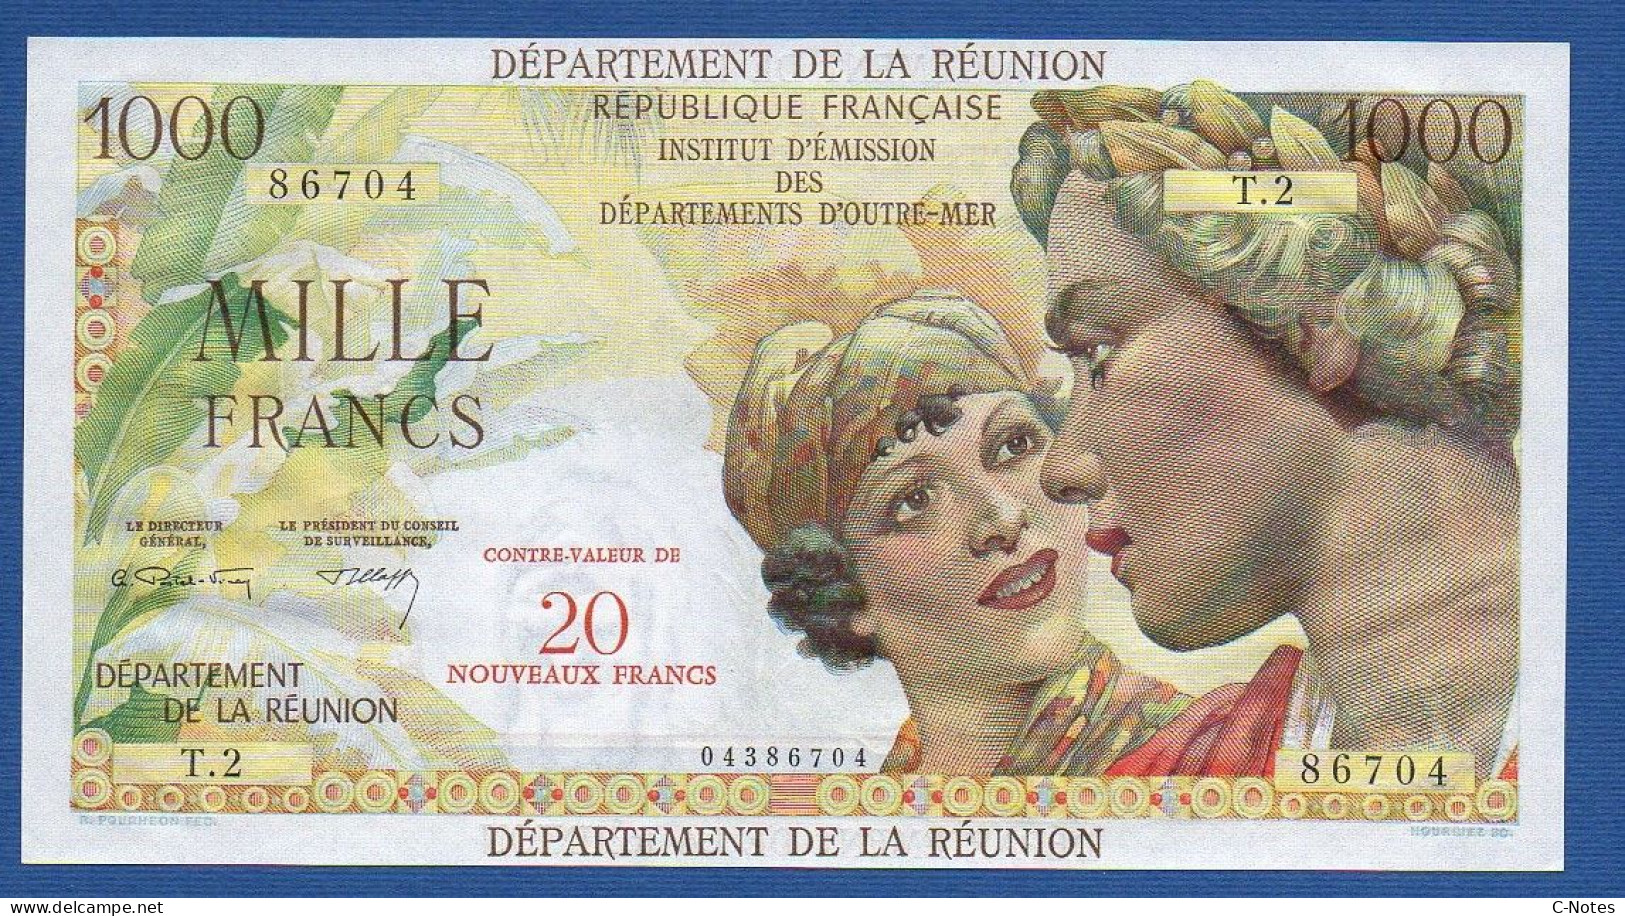 RÉUNION - P.55b – 20 Nouveaux Francs ND (1971) UNC, S/n T.2 86704 - Réunion